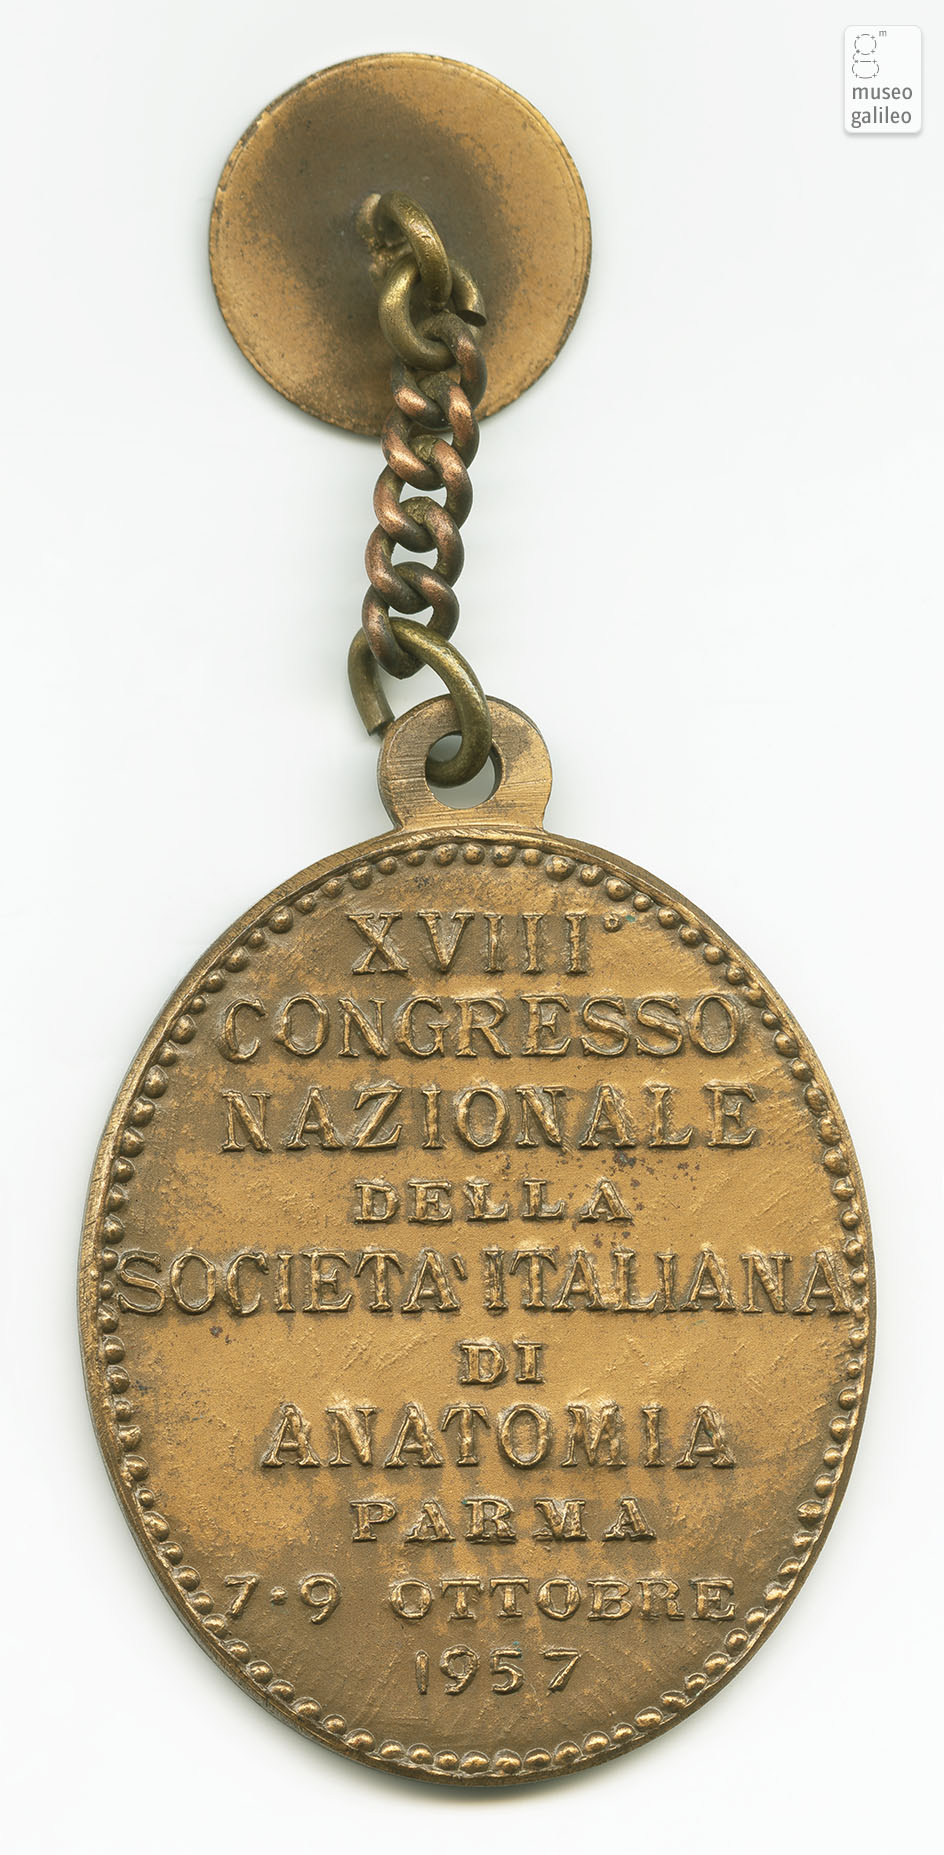 Congresso Nazionale della SocietÃ  Italiana di Anatomia (Parma, 1957) - rovescio